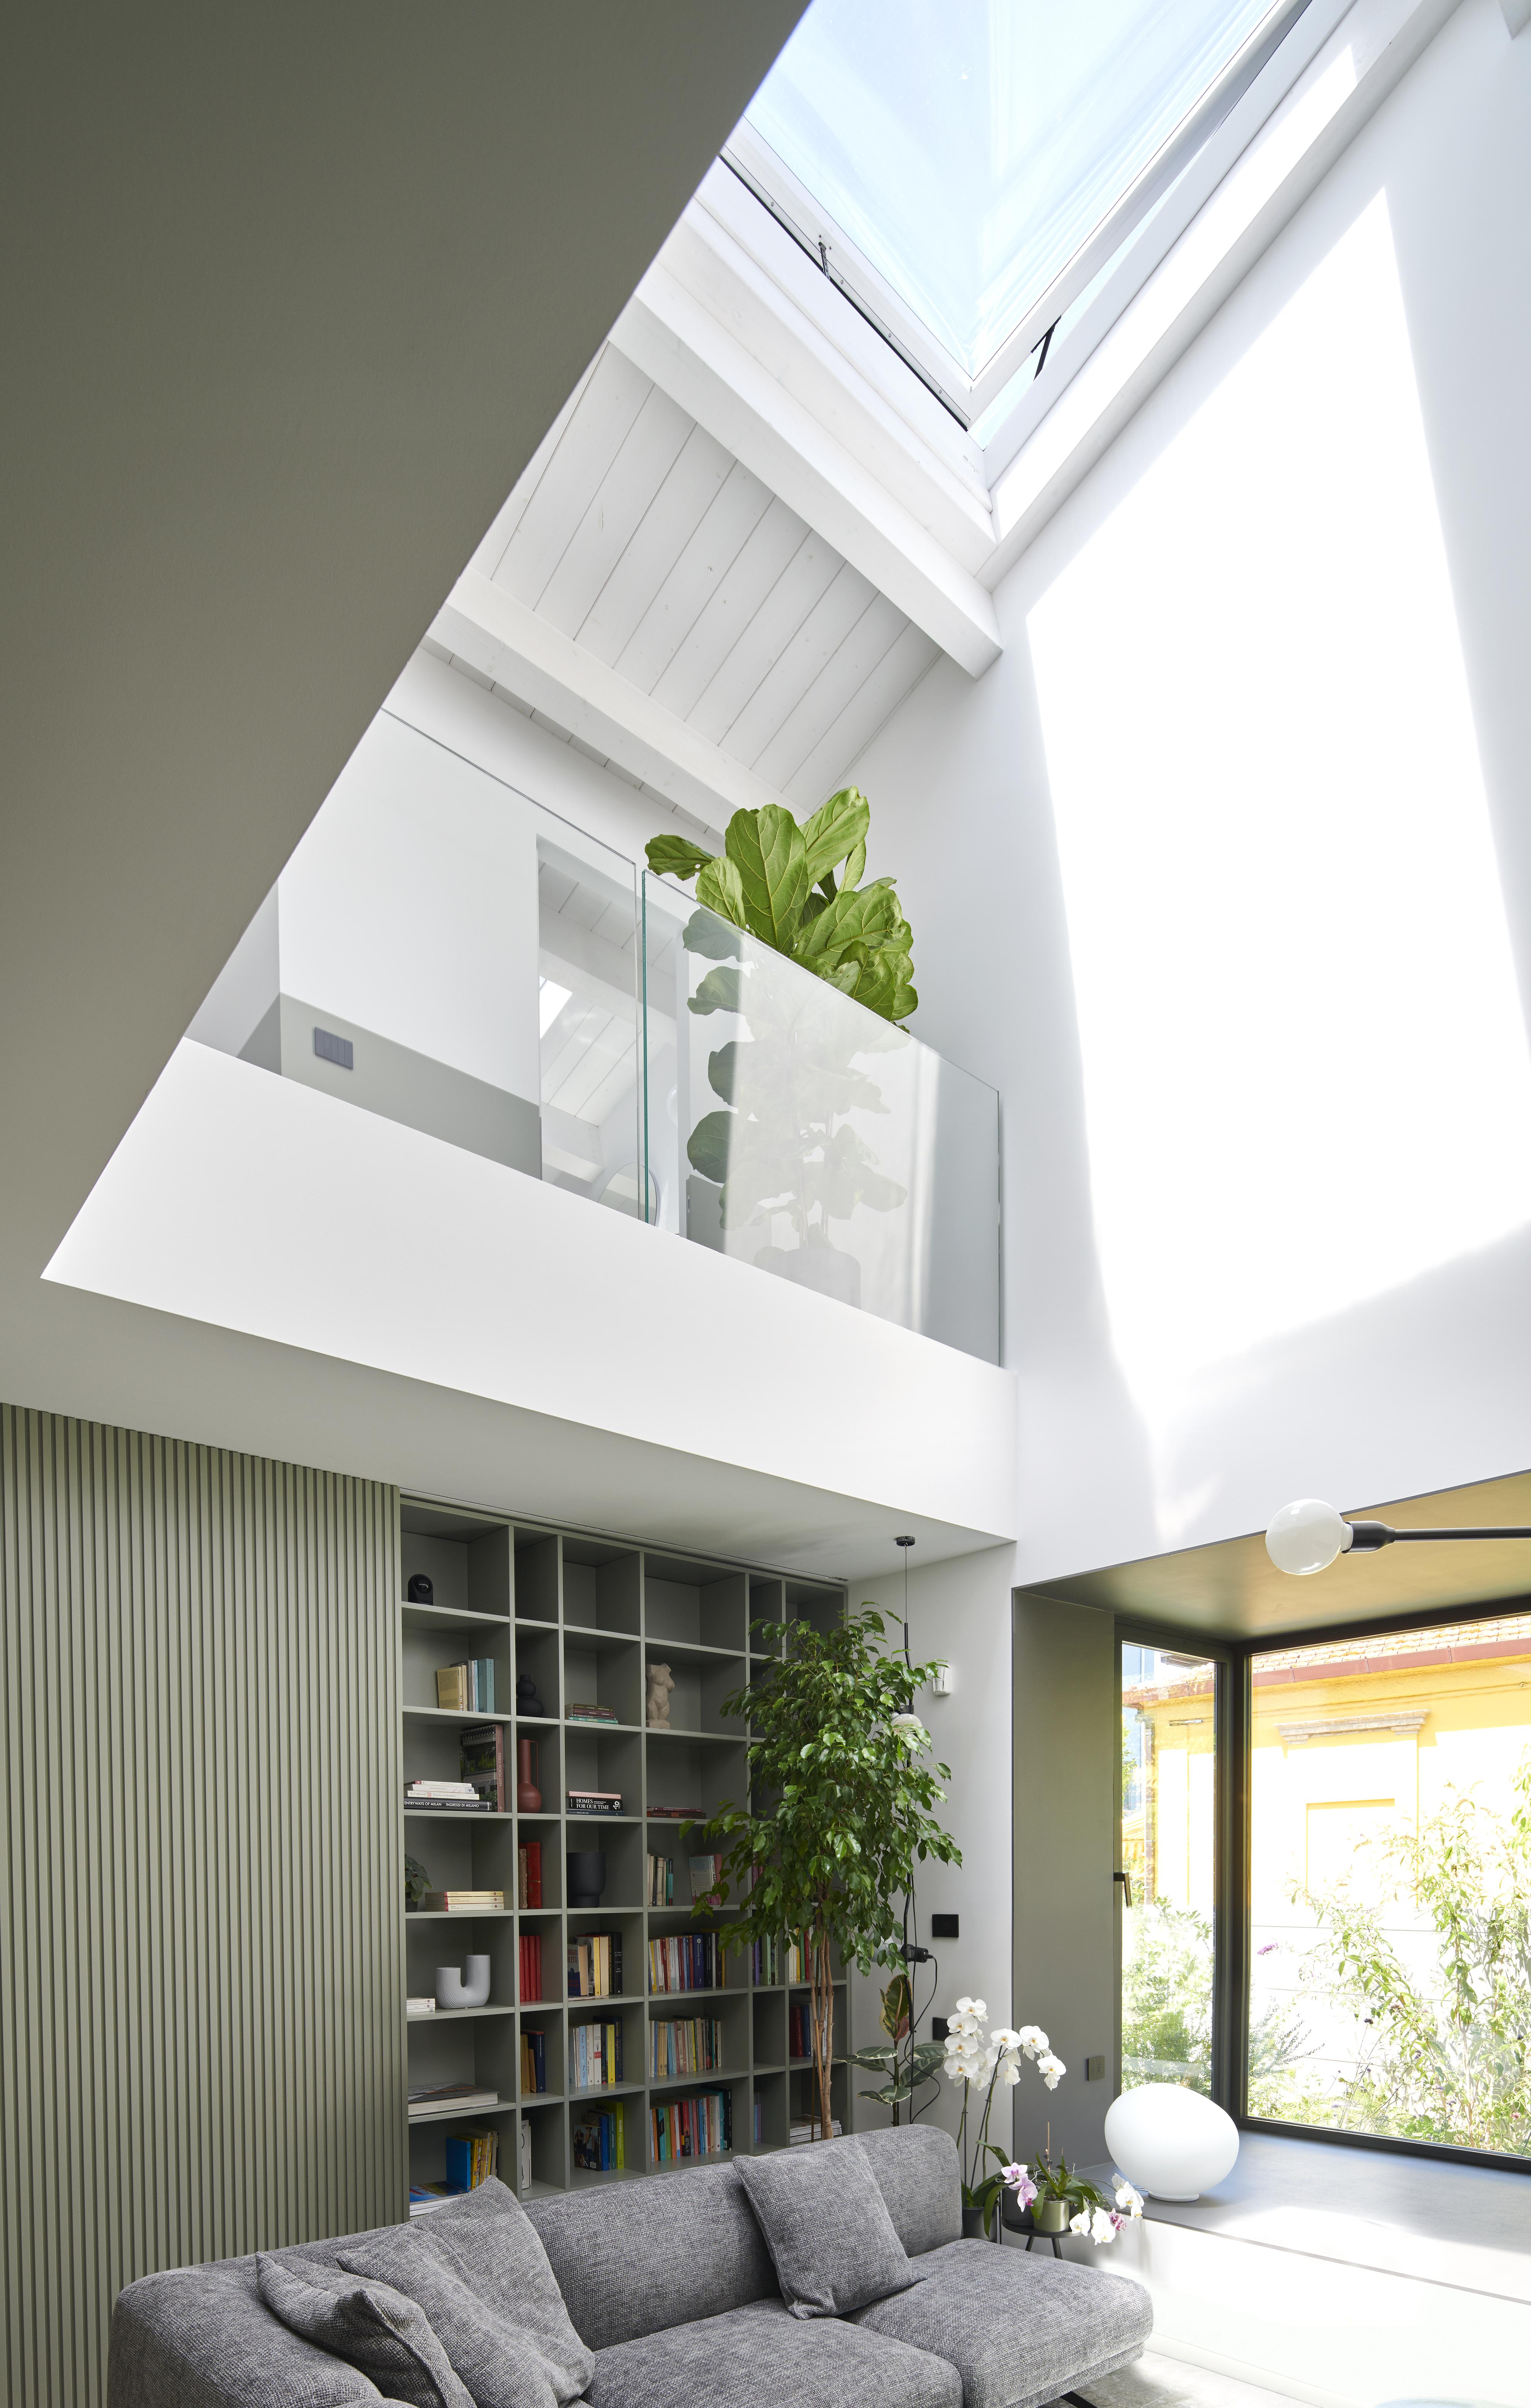 Soggiorno moderno con finestra per tetti VELUX, divano grigio, libreria e piante da interno.